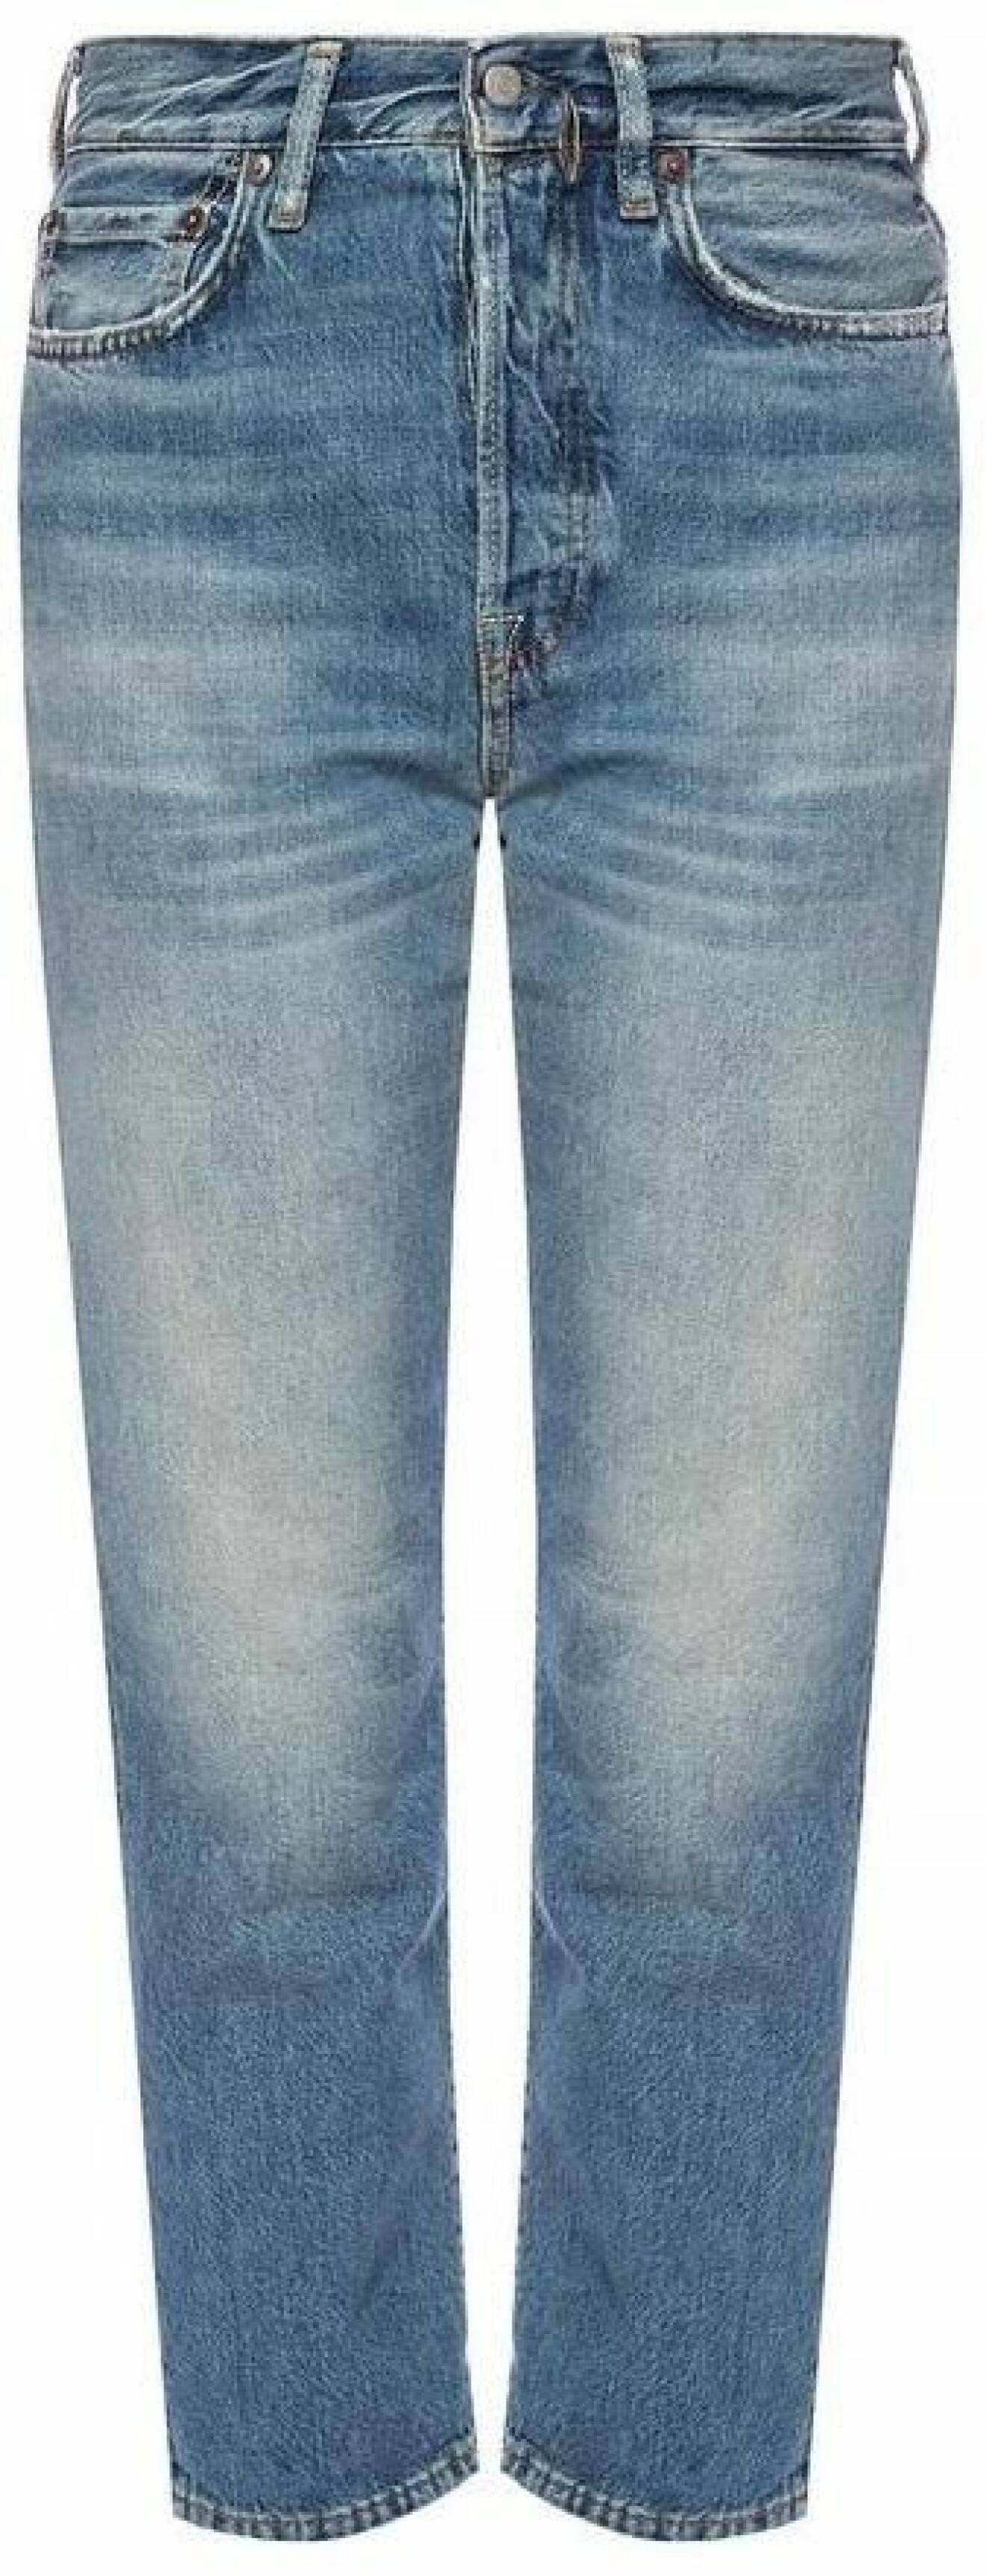 Jeans i rak modell från Acne Studios.